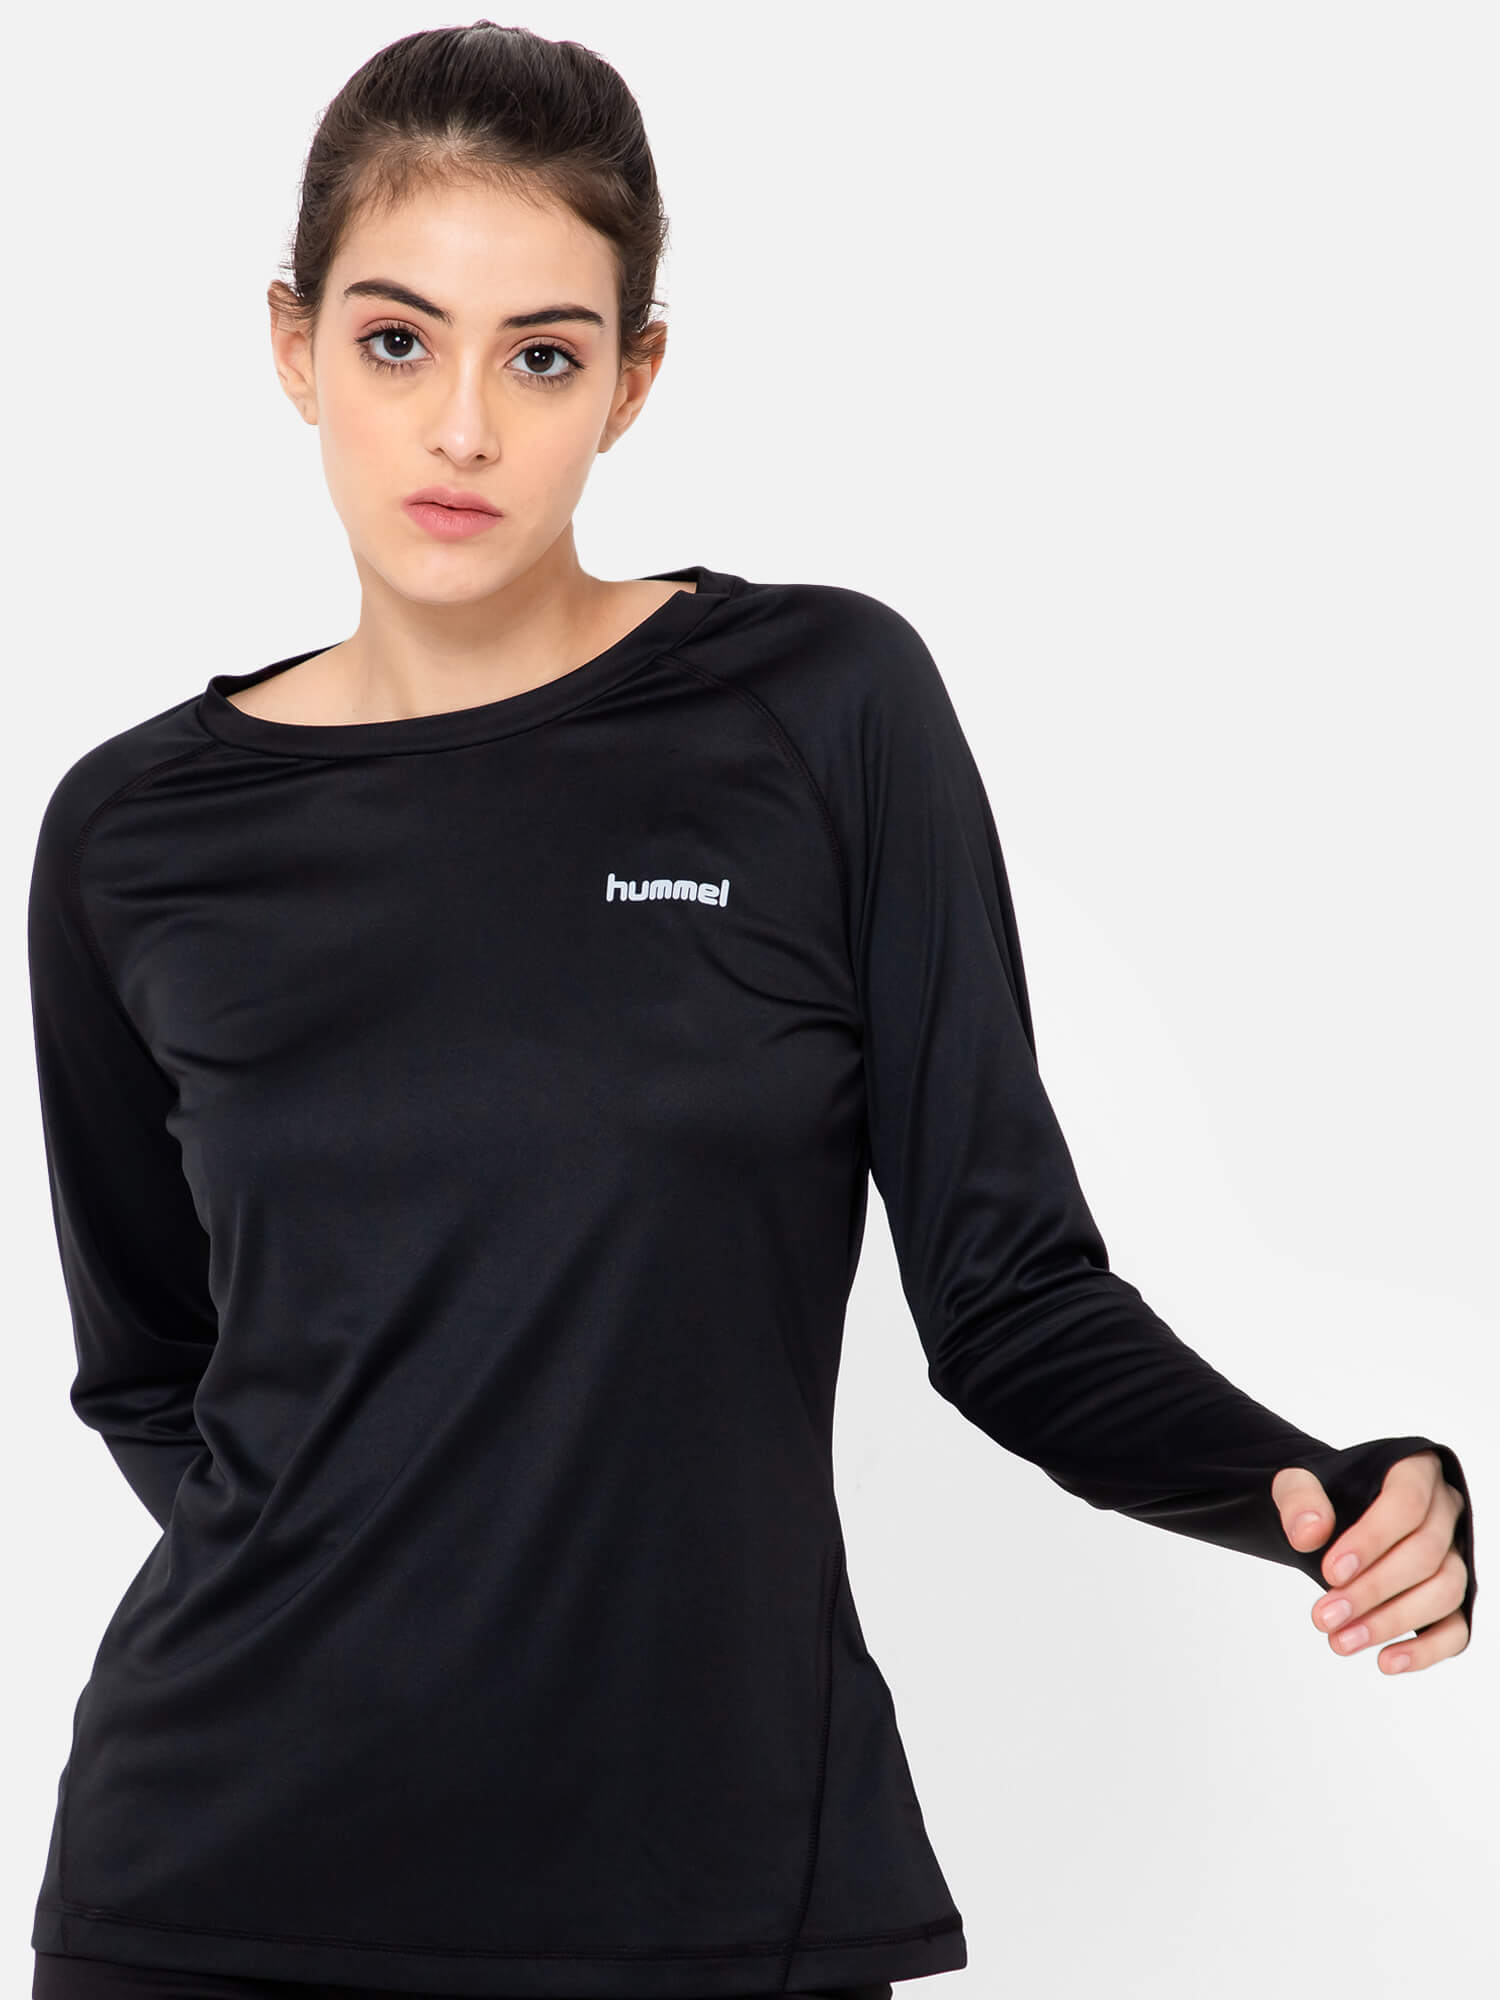 Women's Core Active T-Shirt in Black